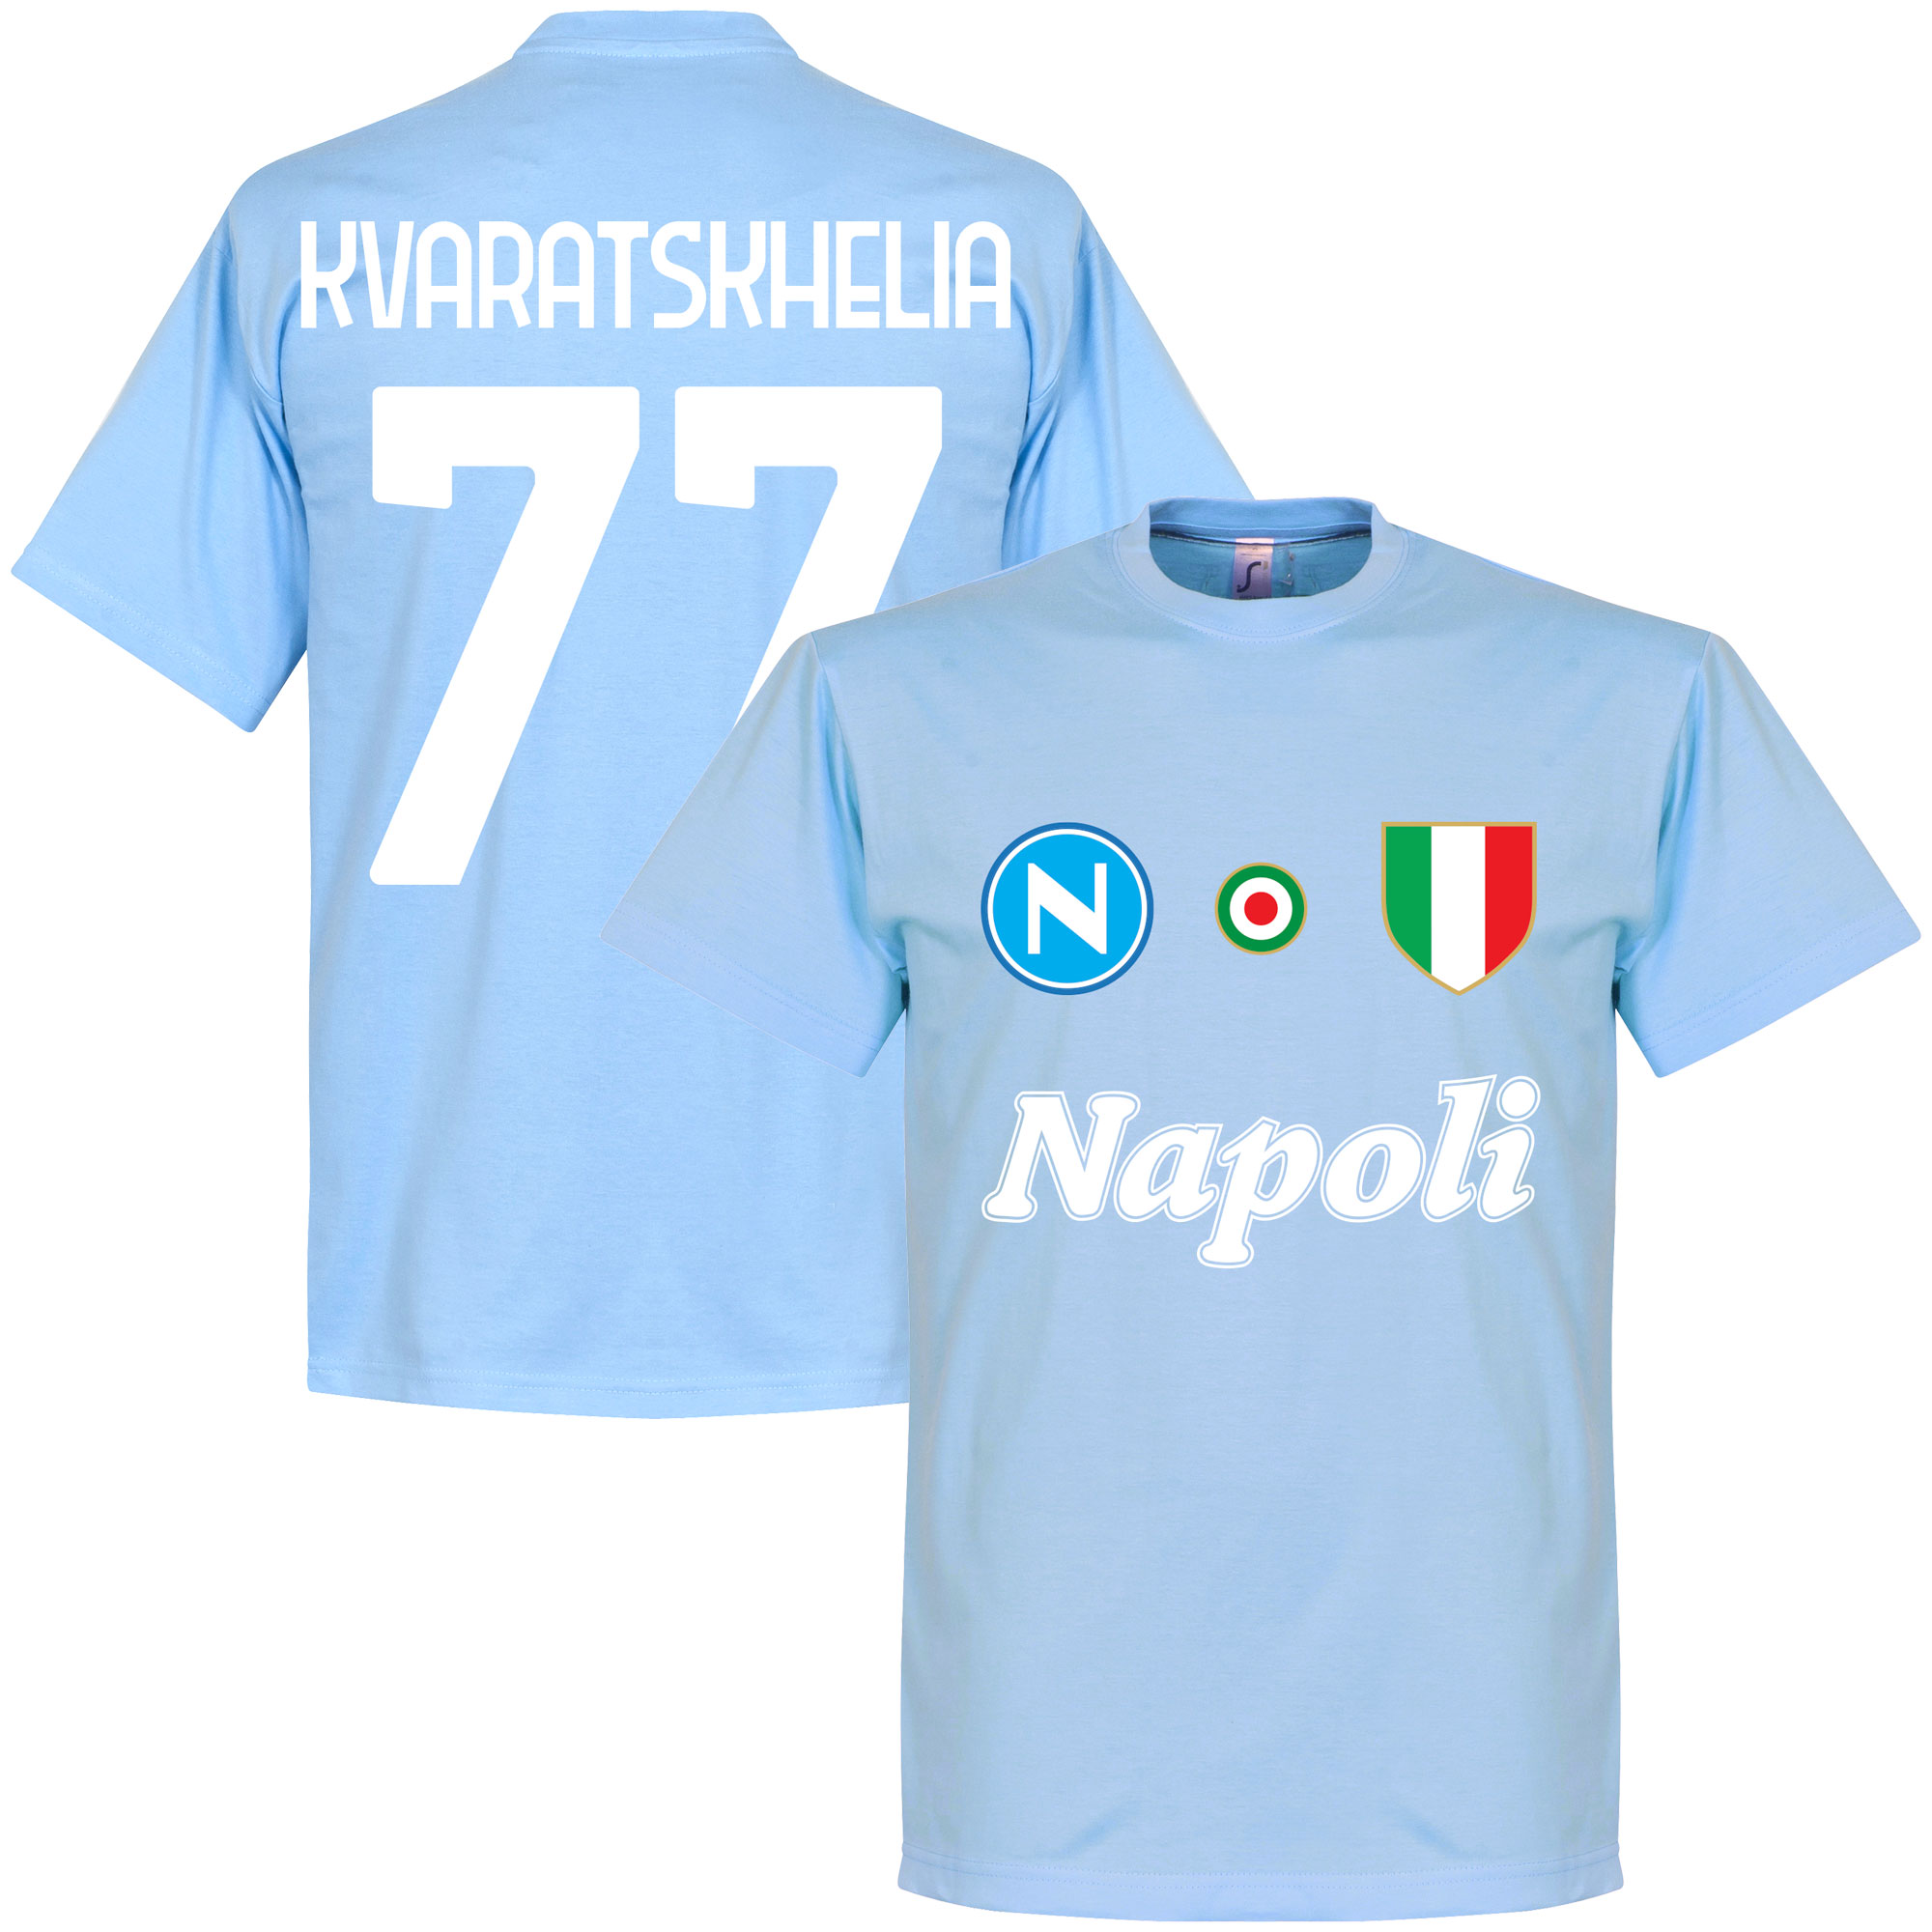 Napoli Kvaratskhelia 77 Team T-Shirt - Lichtblauw - Kinderen - 2 Years